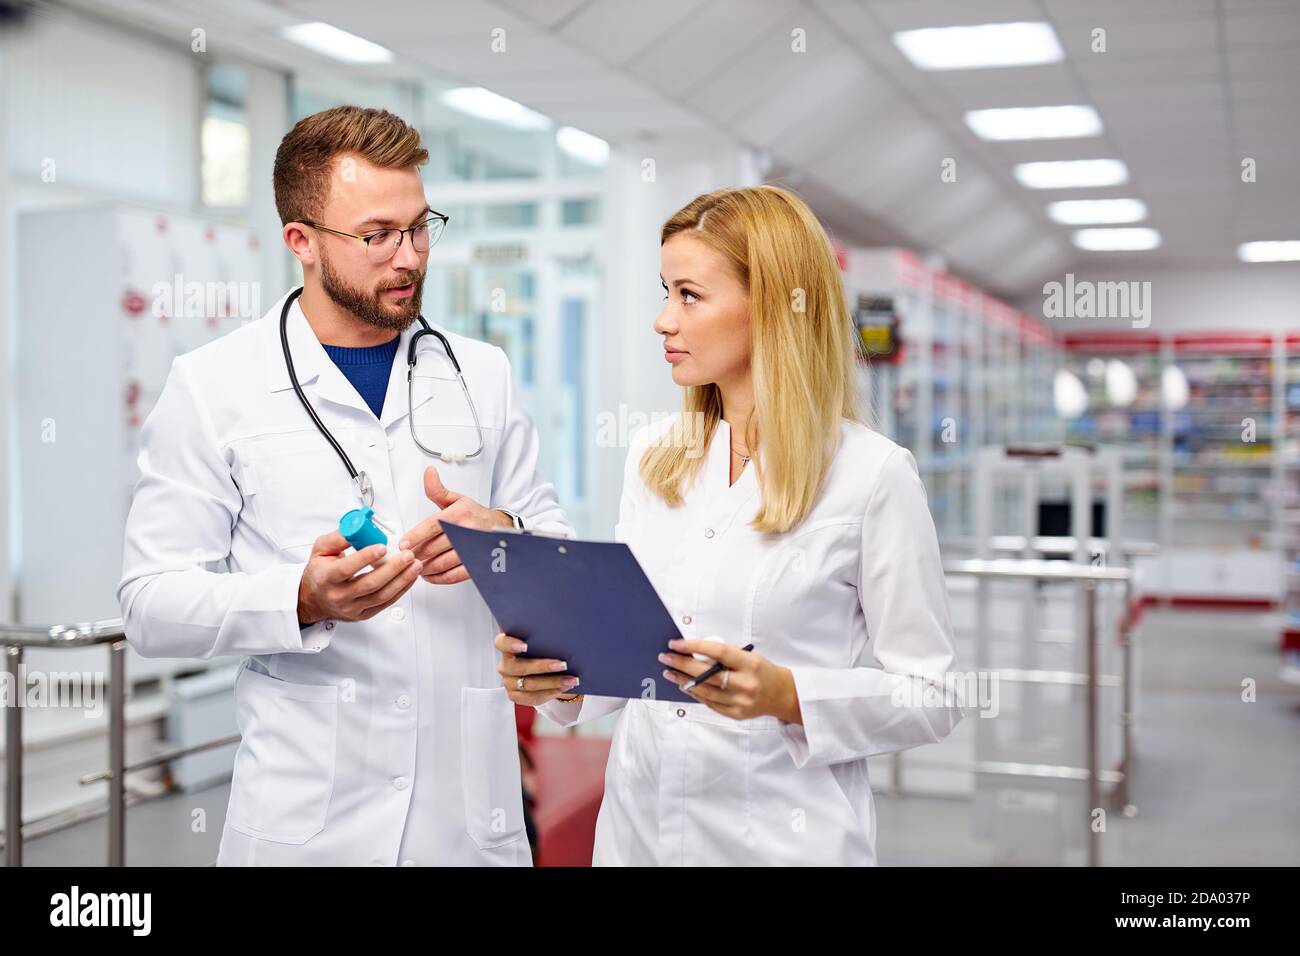 Zwei junge kaukasische Apotheker diskutieren Medikamente, mit einer digitalen Tablette und Dokumente. Mann und Frau in weißem medizinischen Kleid arbeiten in der Apotheke Stockfoto